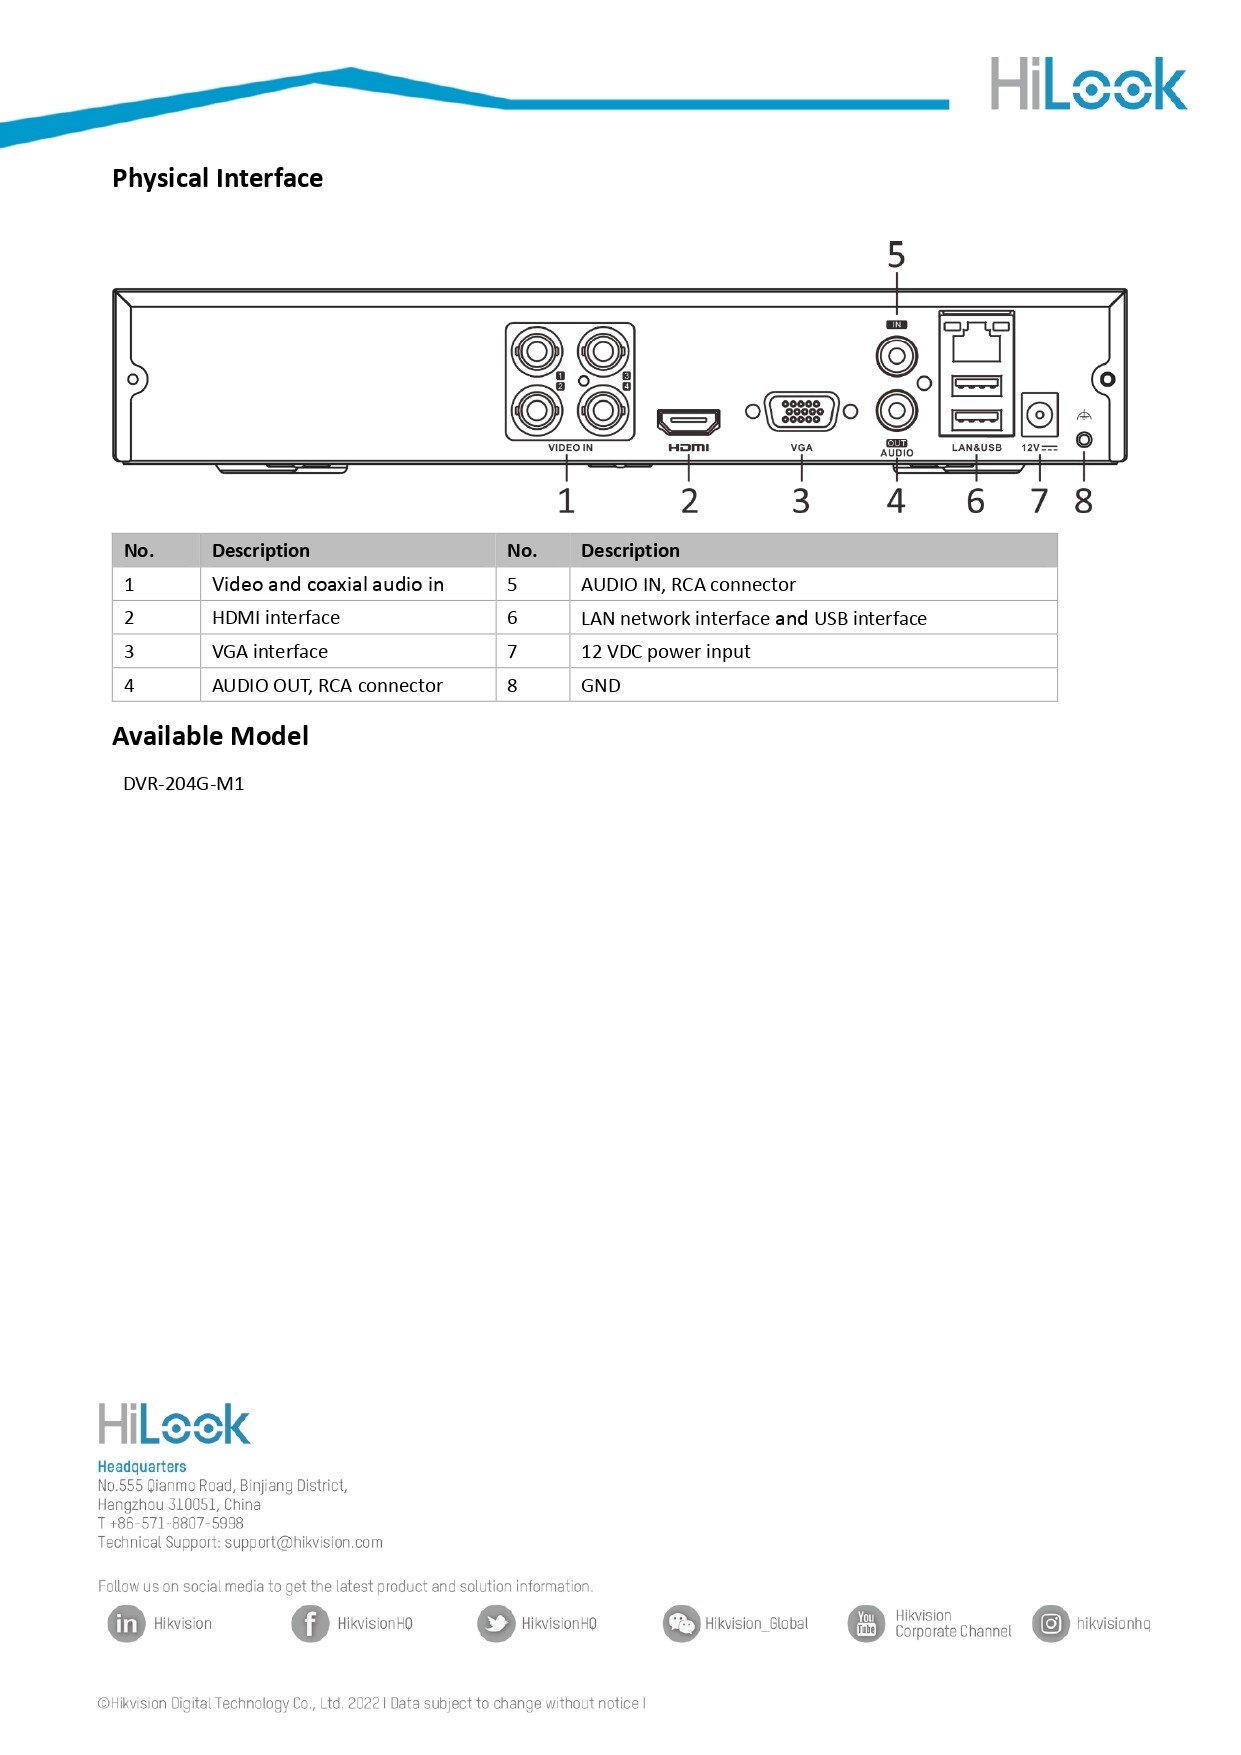 ภาพที่ให้รายละเอียดเกี่ยวกับ HILOOK กล้องวงจรปิด 4ระบบ 2MP รุ่น DVR-204G-M1(C) + THC-B120-C 3.6mm จำนวน 4 ตัว + Adapter (Adaptor) x 4 - รุ่นใหม่มาแทน DVR-204G-F1(S) BY N.T Computer